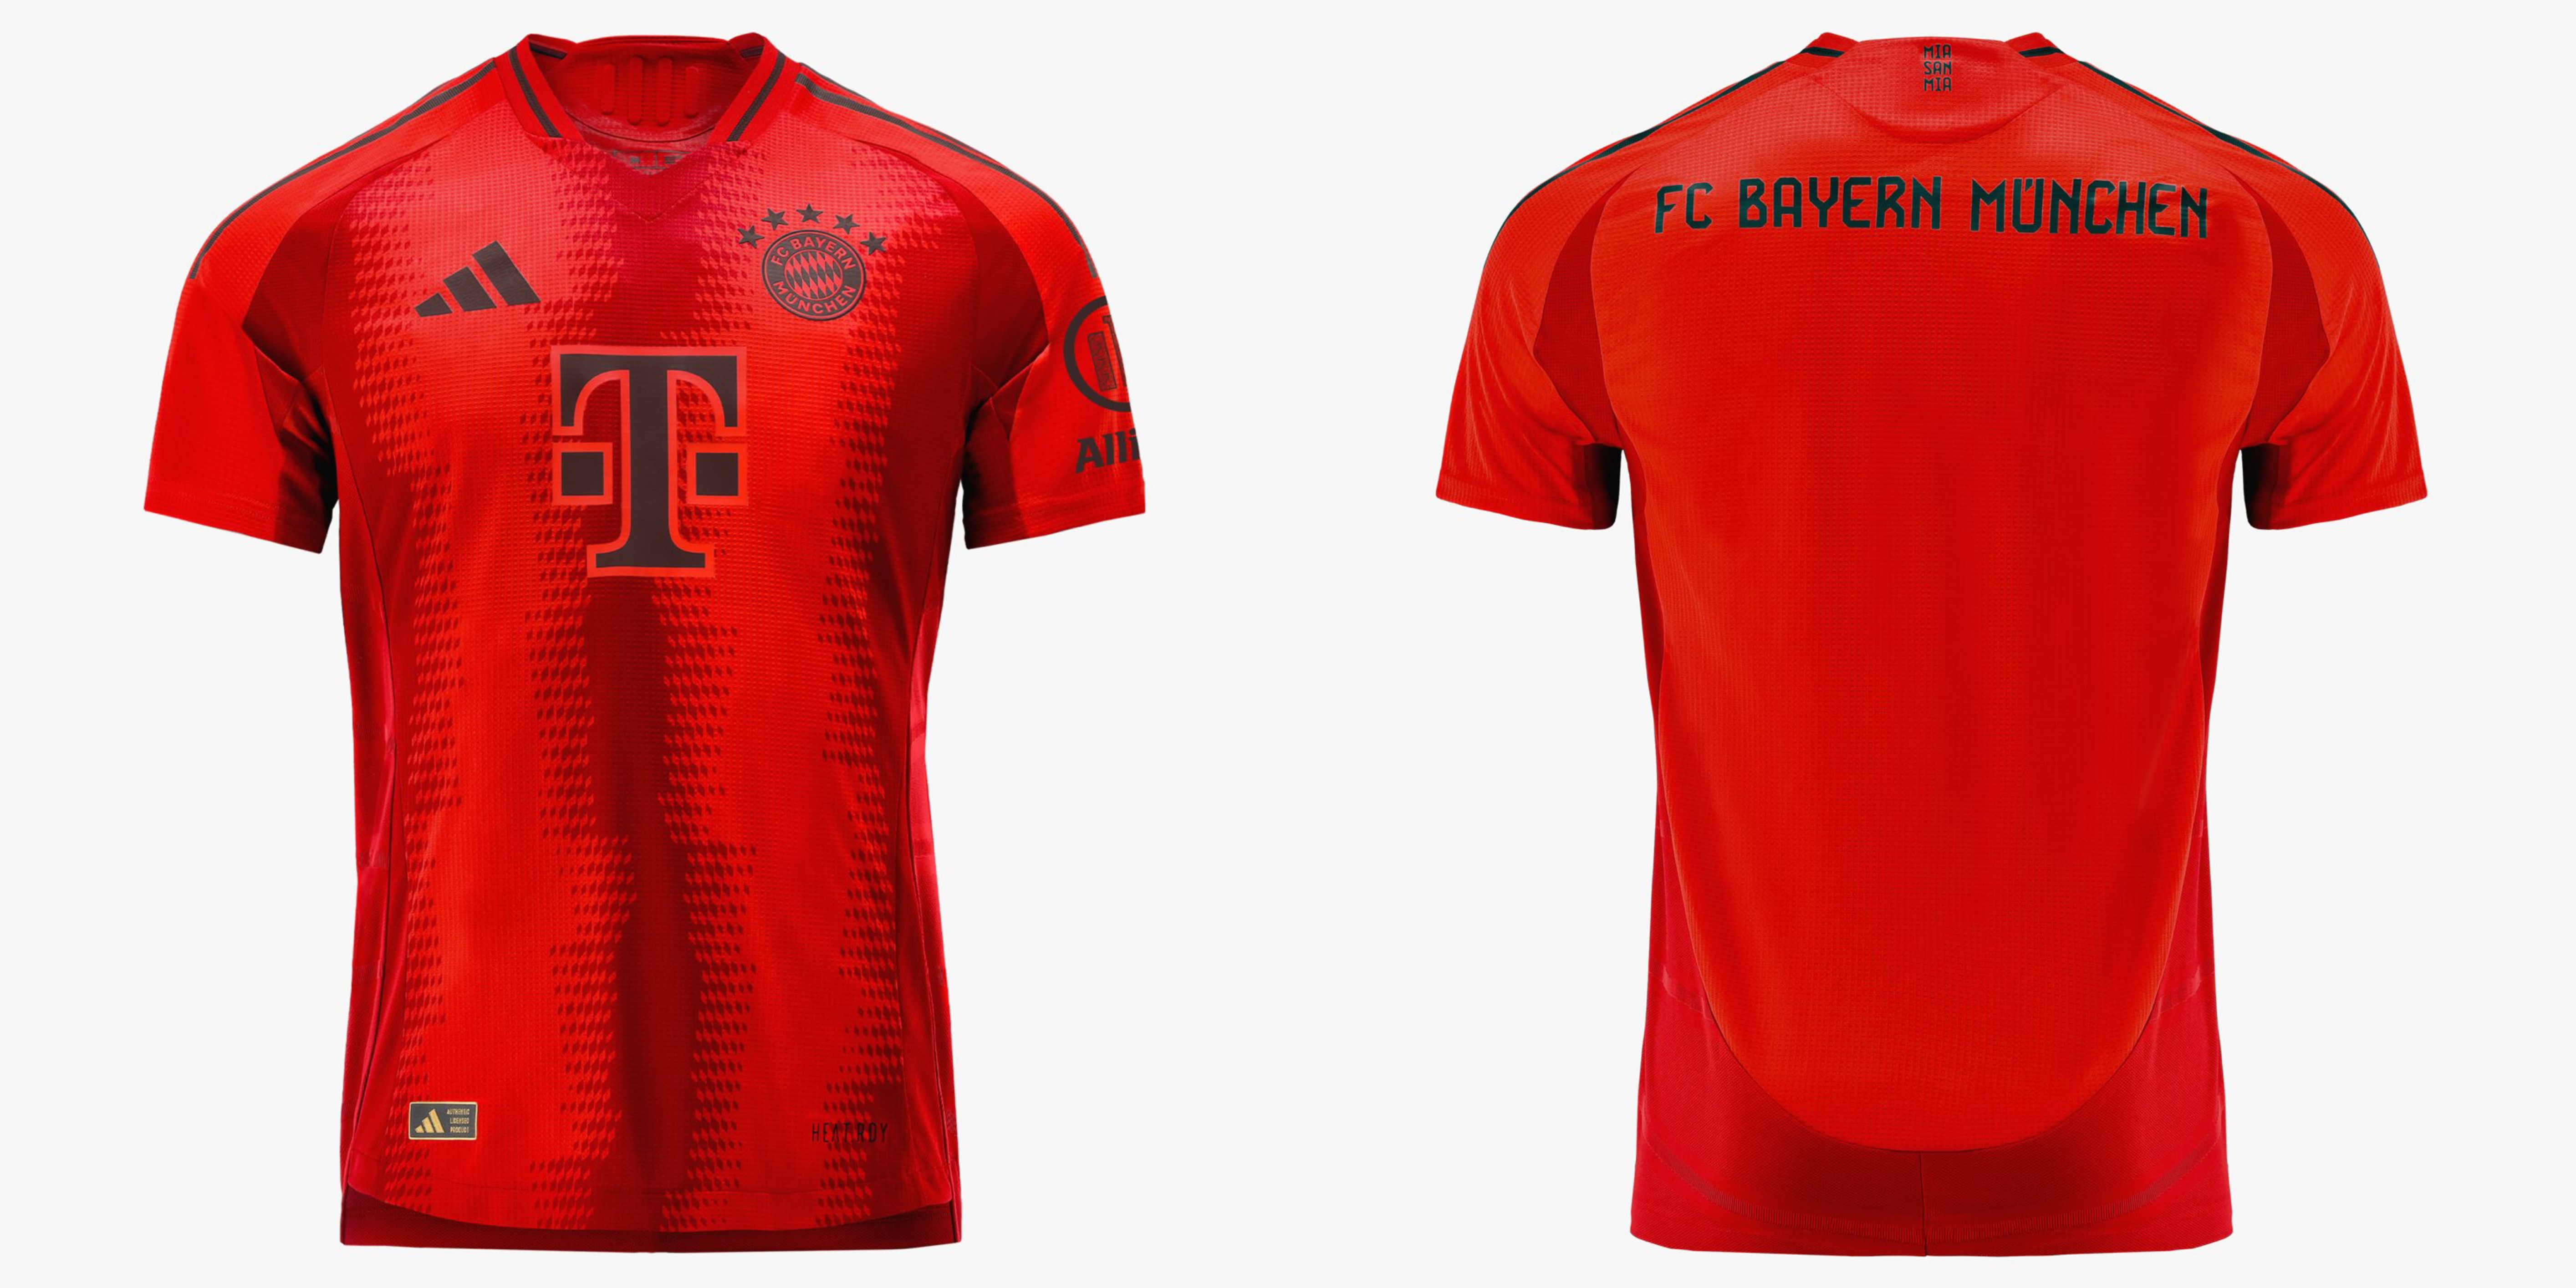 拜仁下赛季主场球衣:红色系设计致敬经典,深栗色队徽